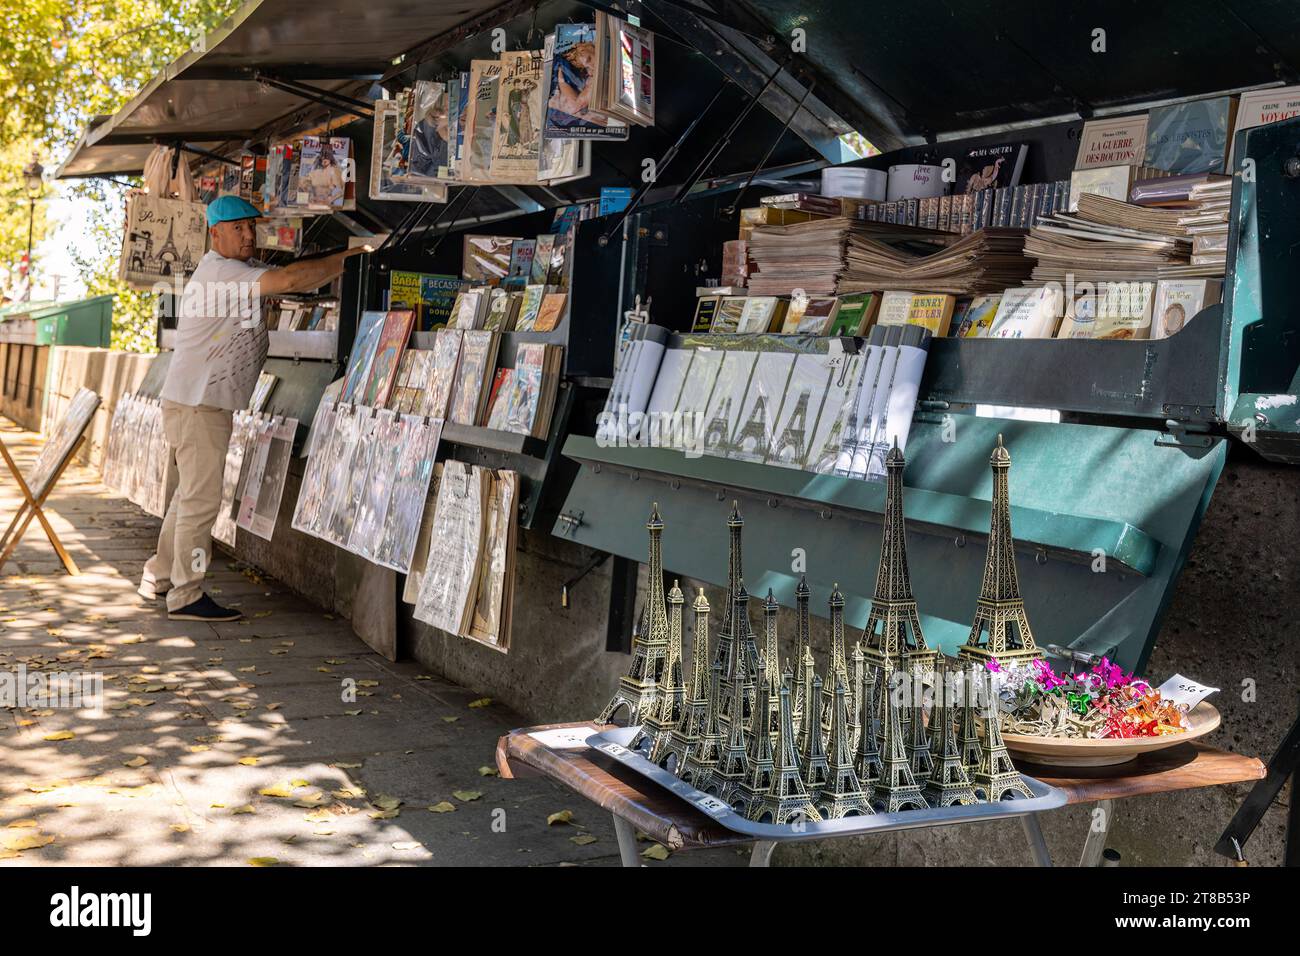 Bouquinistes oder Verkäufer von gebrauchten Büchern und Zeitschriften entlang der seine, Paris, Frankreich, Europa Stockfoto